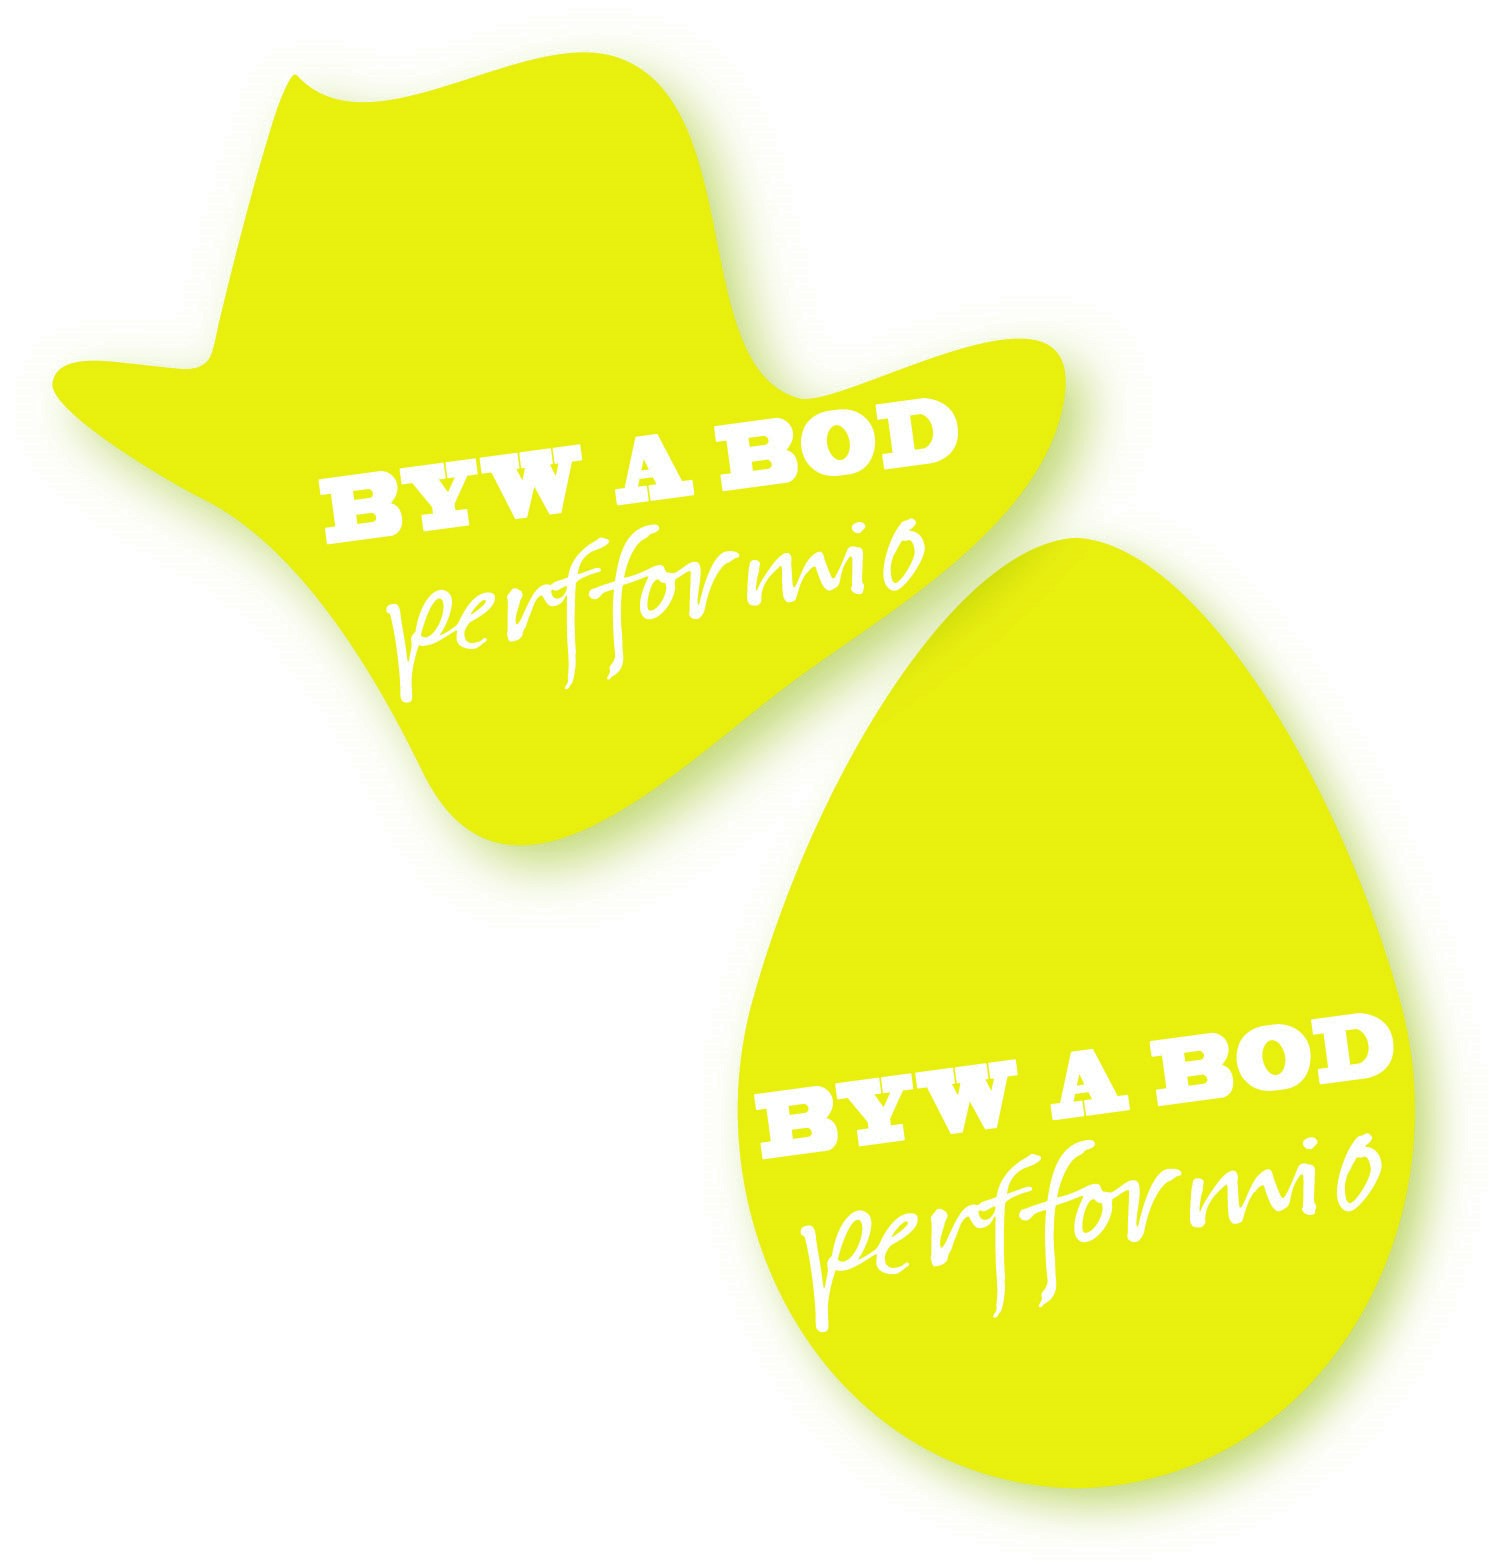 Byw a Bod Perfformio